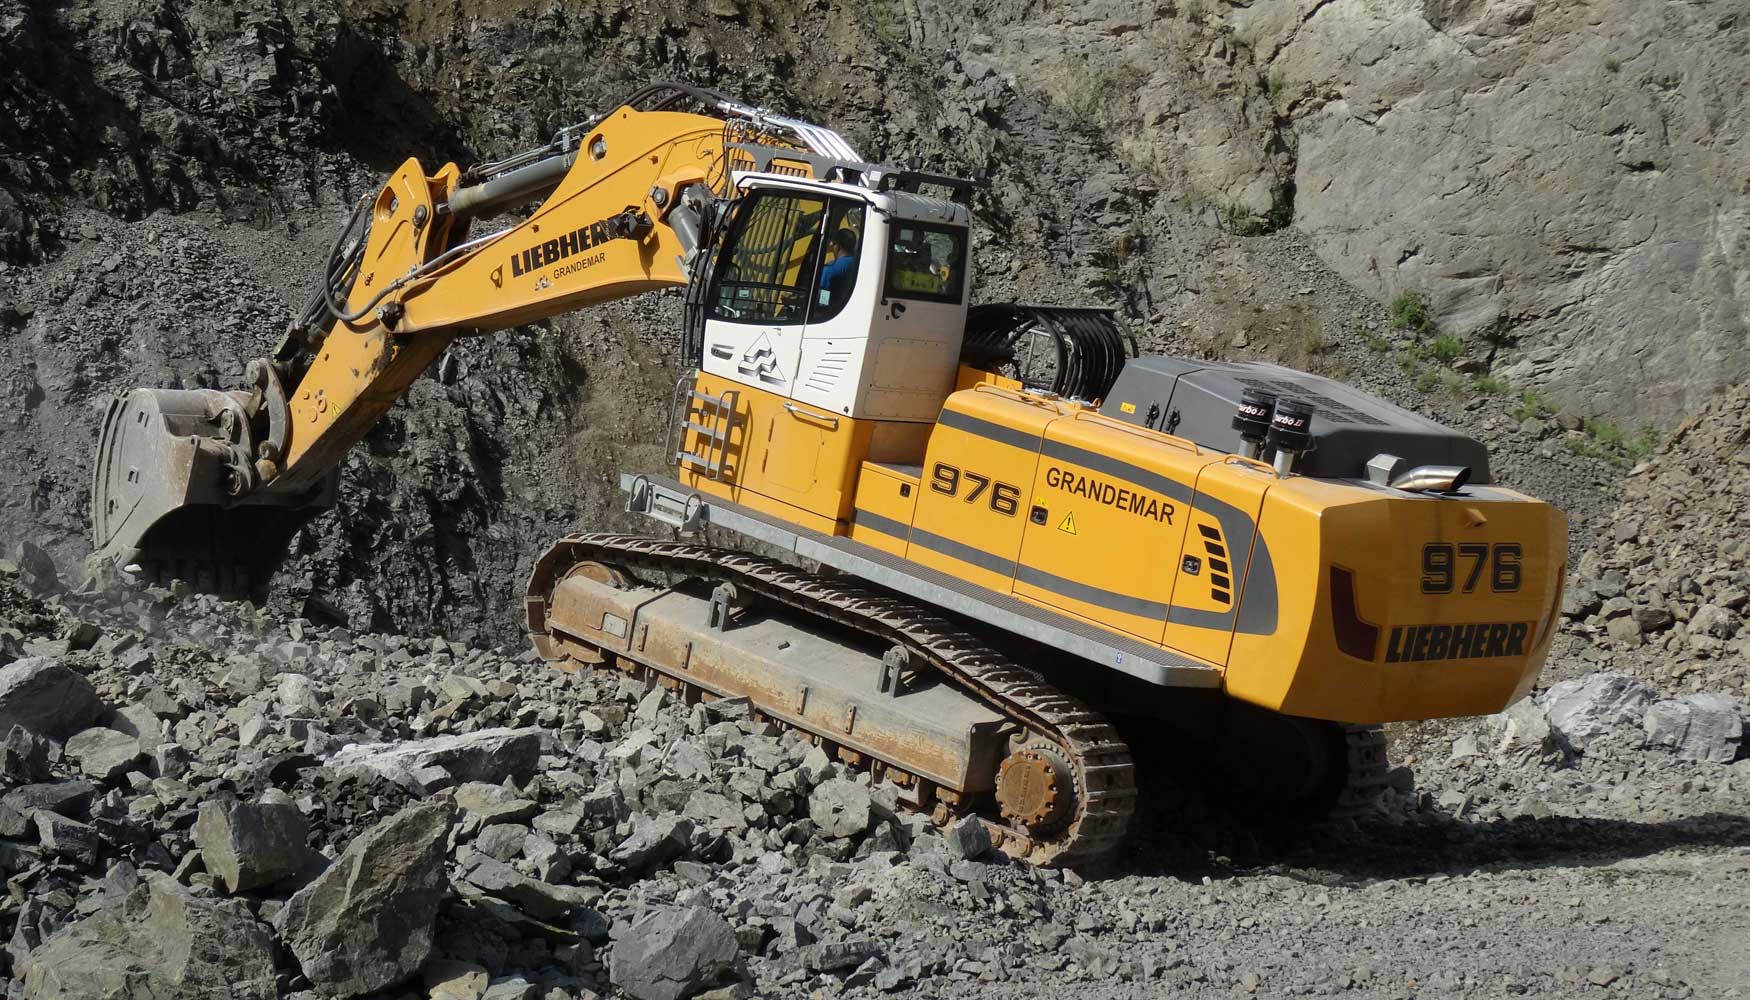 Las excavadoras sobre cadenas Liebherr del modelo R 976 presentan un peso operativo de casi 95 toneladas y una potencia de 400 kW / 544 CV...